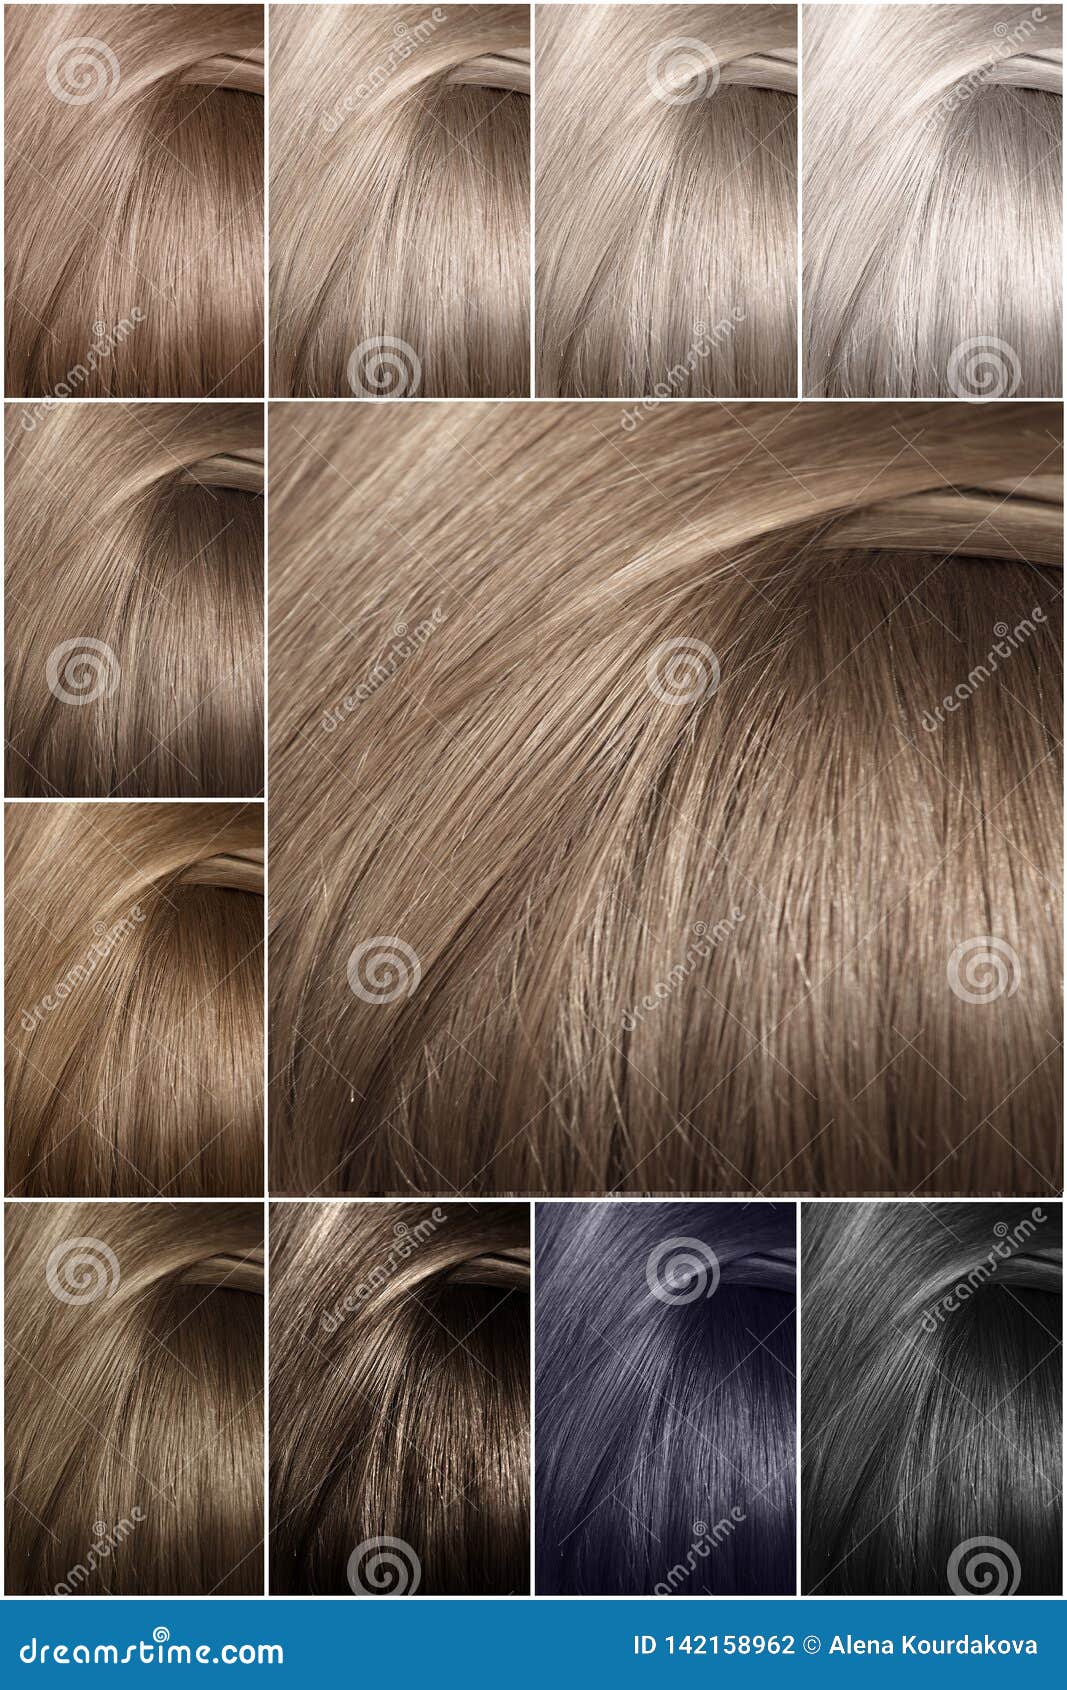 Palette blond haarfarben braun Haarfarben Palette